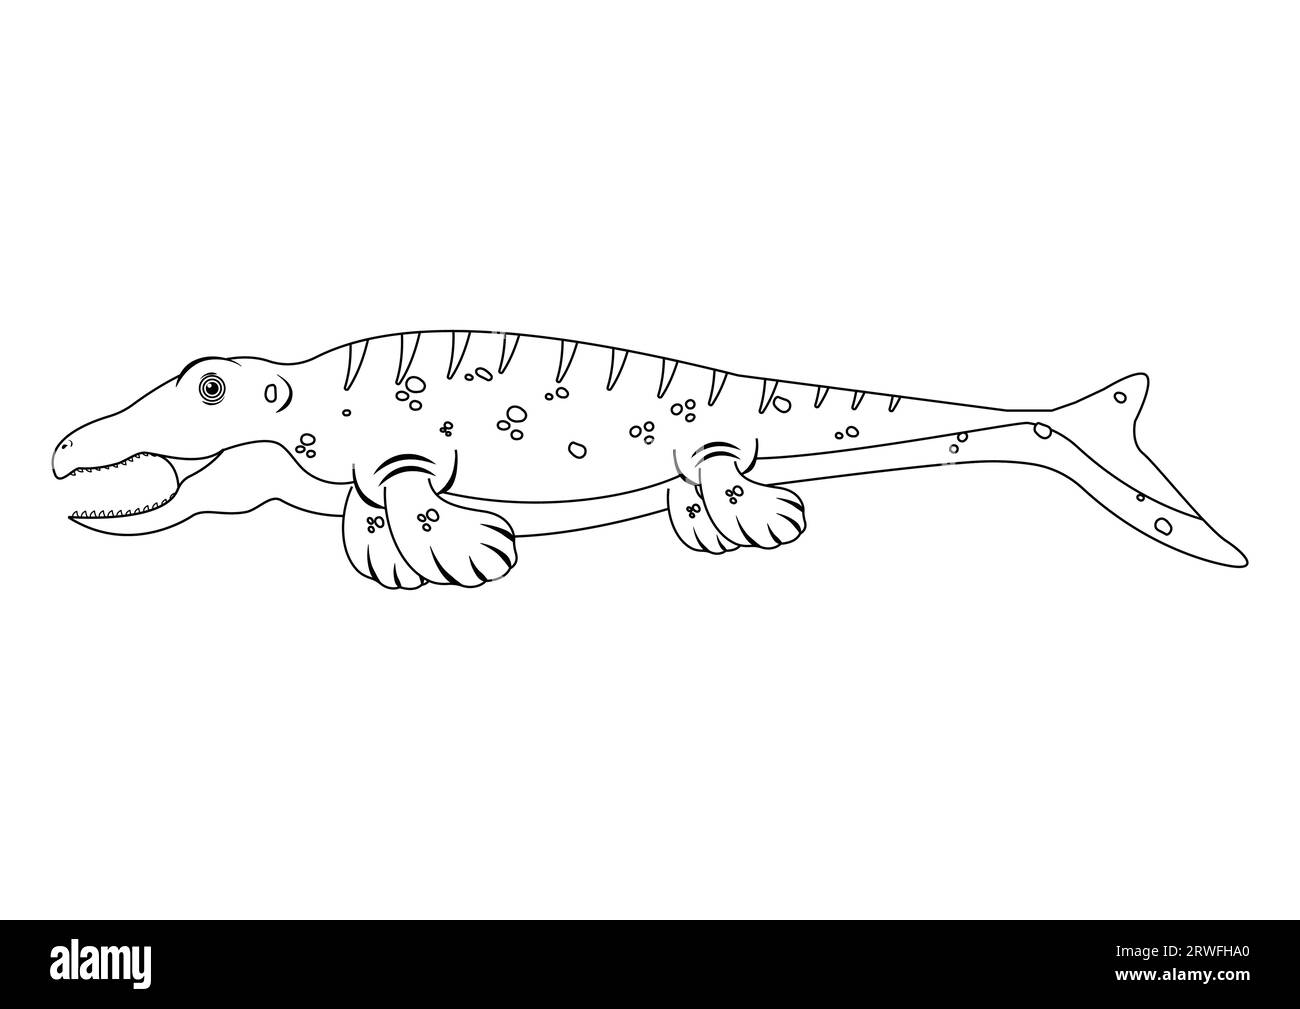 Black and White Mosasaurus Dinosaur Cartoon Character Vector. Coloring Page of a Mosasaurus Dinosaur Stock Vector